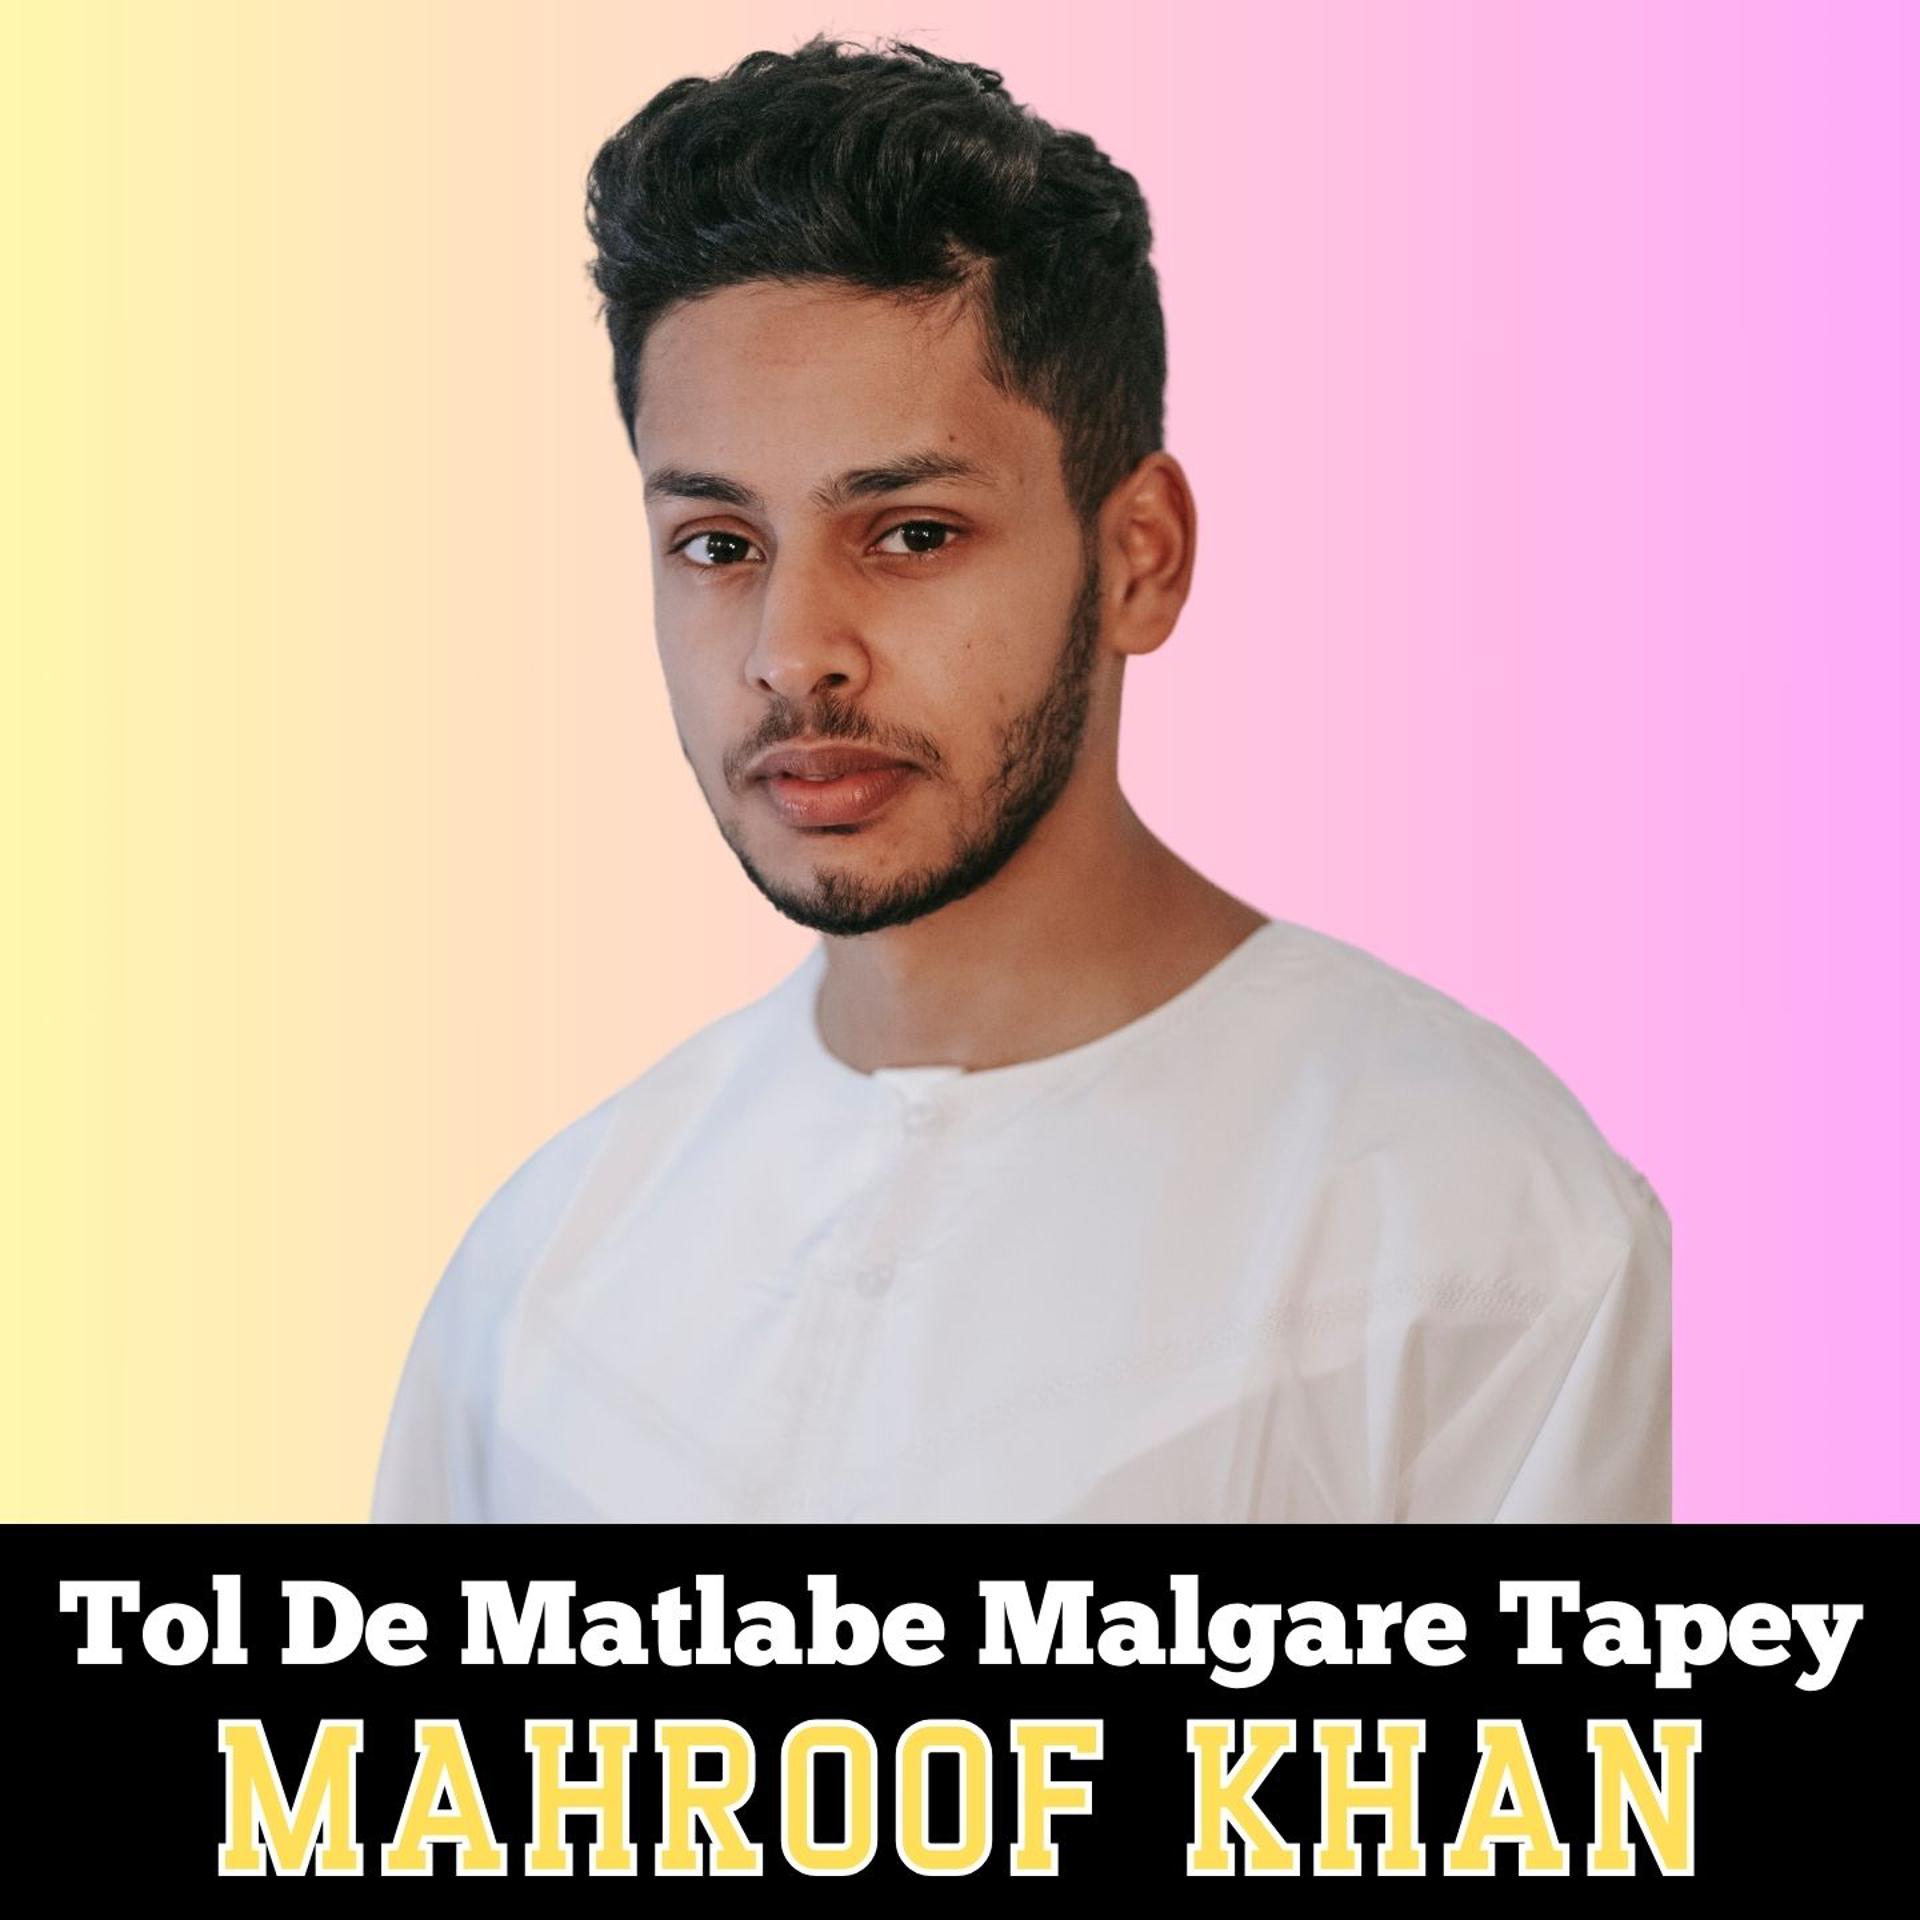 Mahroof khan - фото